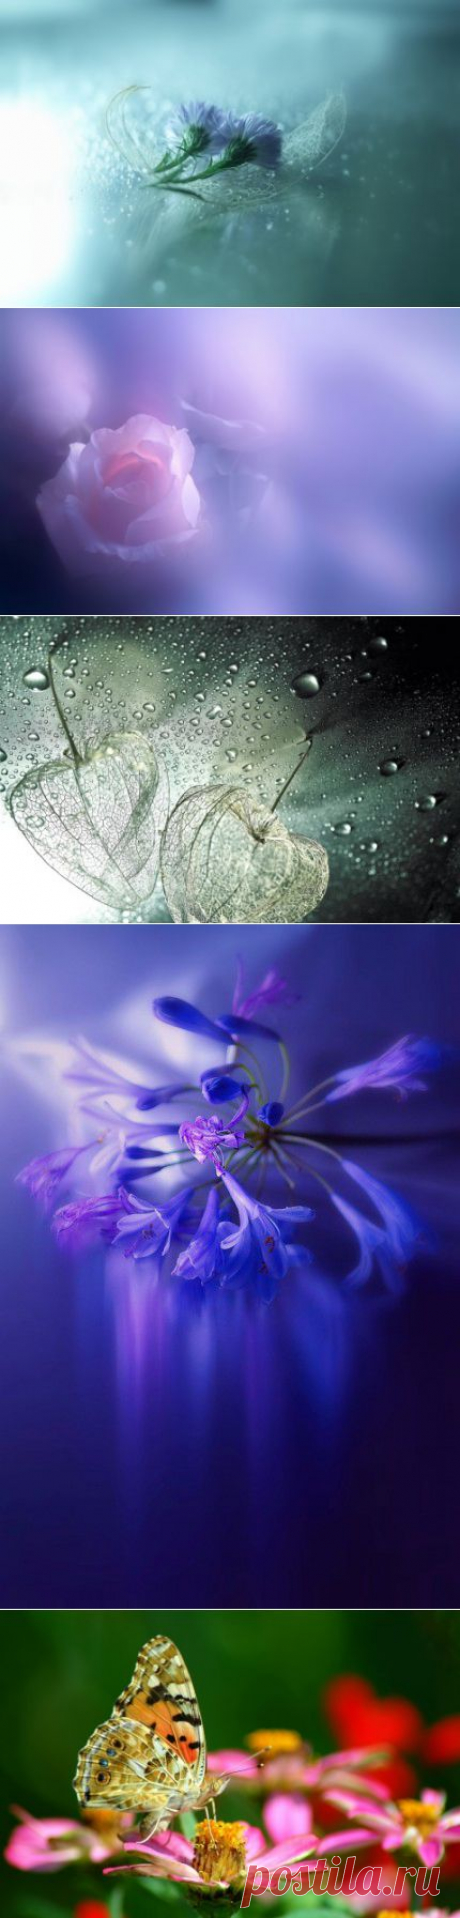 Трогательная хрупкость цветов в фотографиях Lafugue Logos | 5минутка